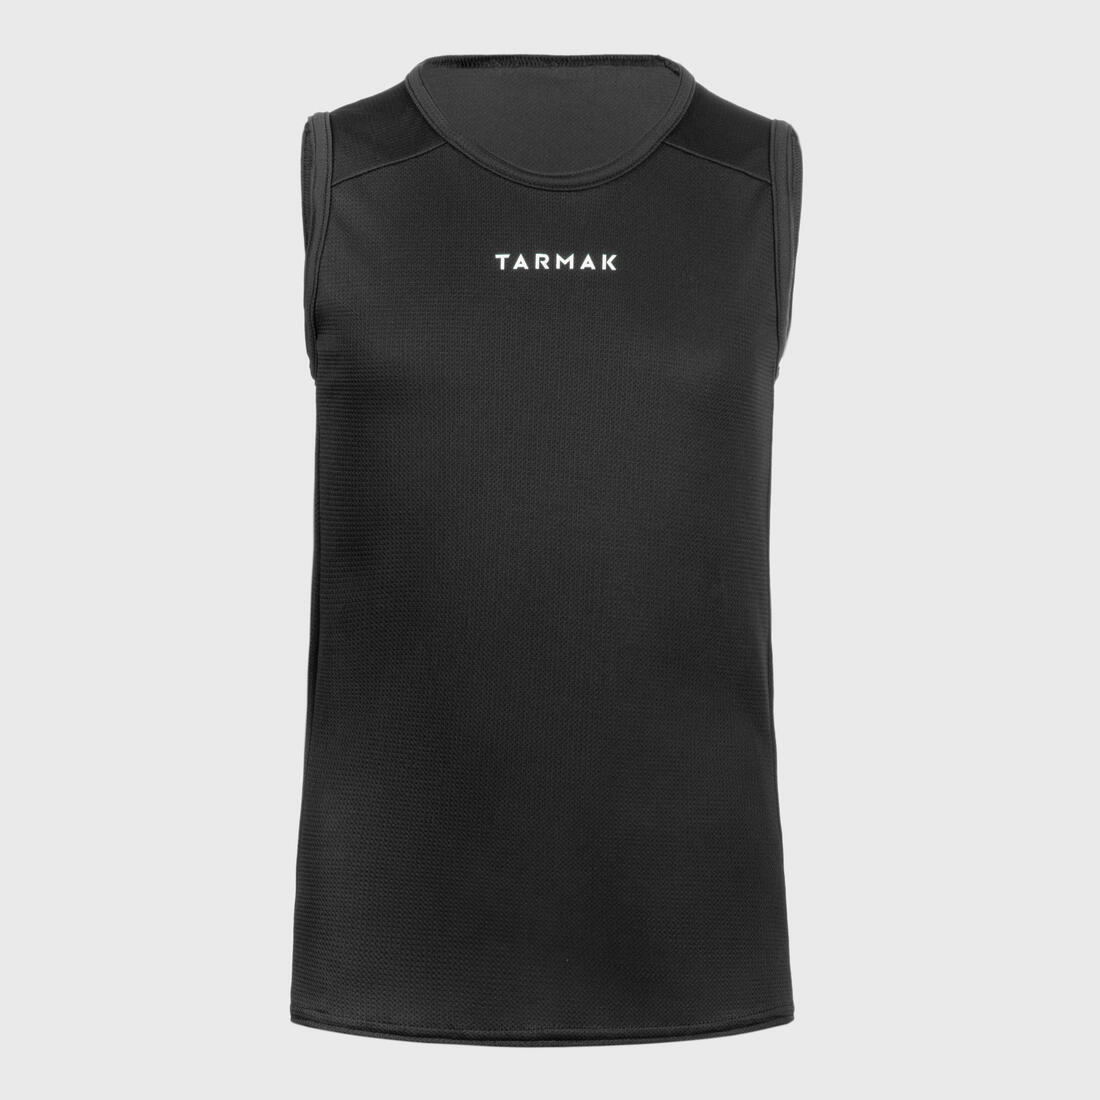 TARMAK(ターマック) バスケットボール ノースリーブシャツ/ジャージ T100 キッズ